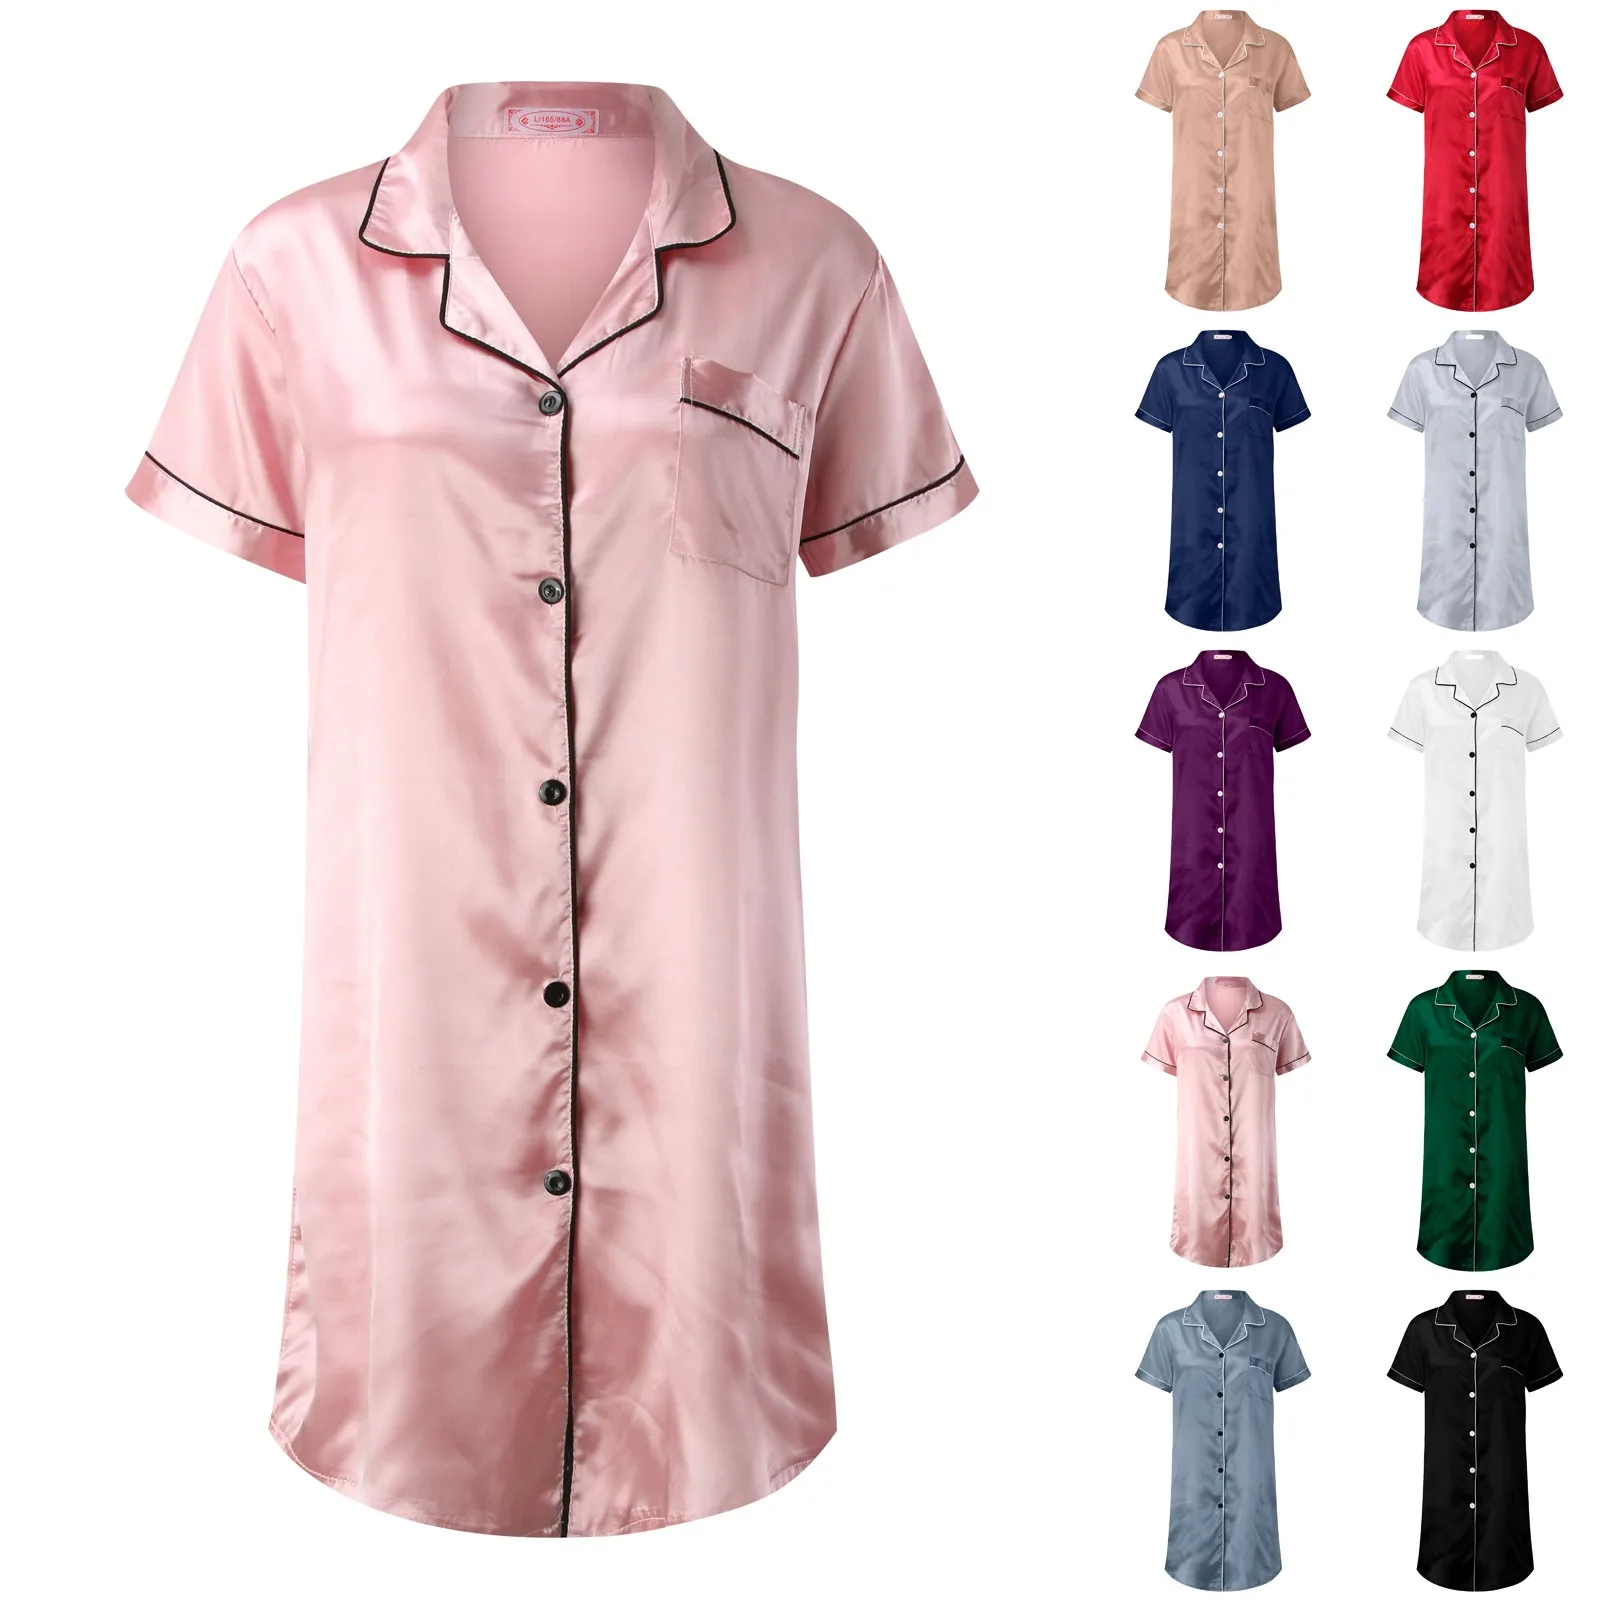 

Женская атласная ночная рубашка, мини-сорочка, короткая ночная рубашка, ночные рубашки для женщин, ночная рубашка с тройным вырезом